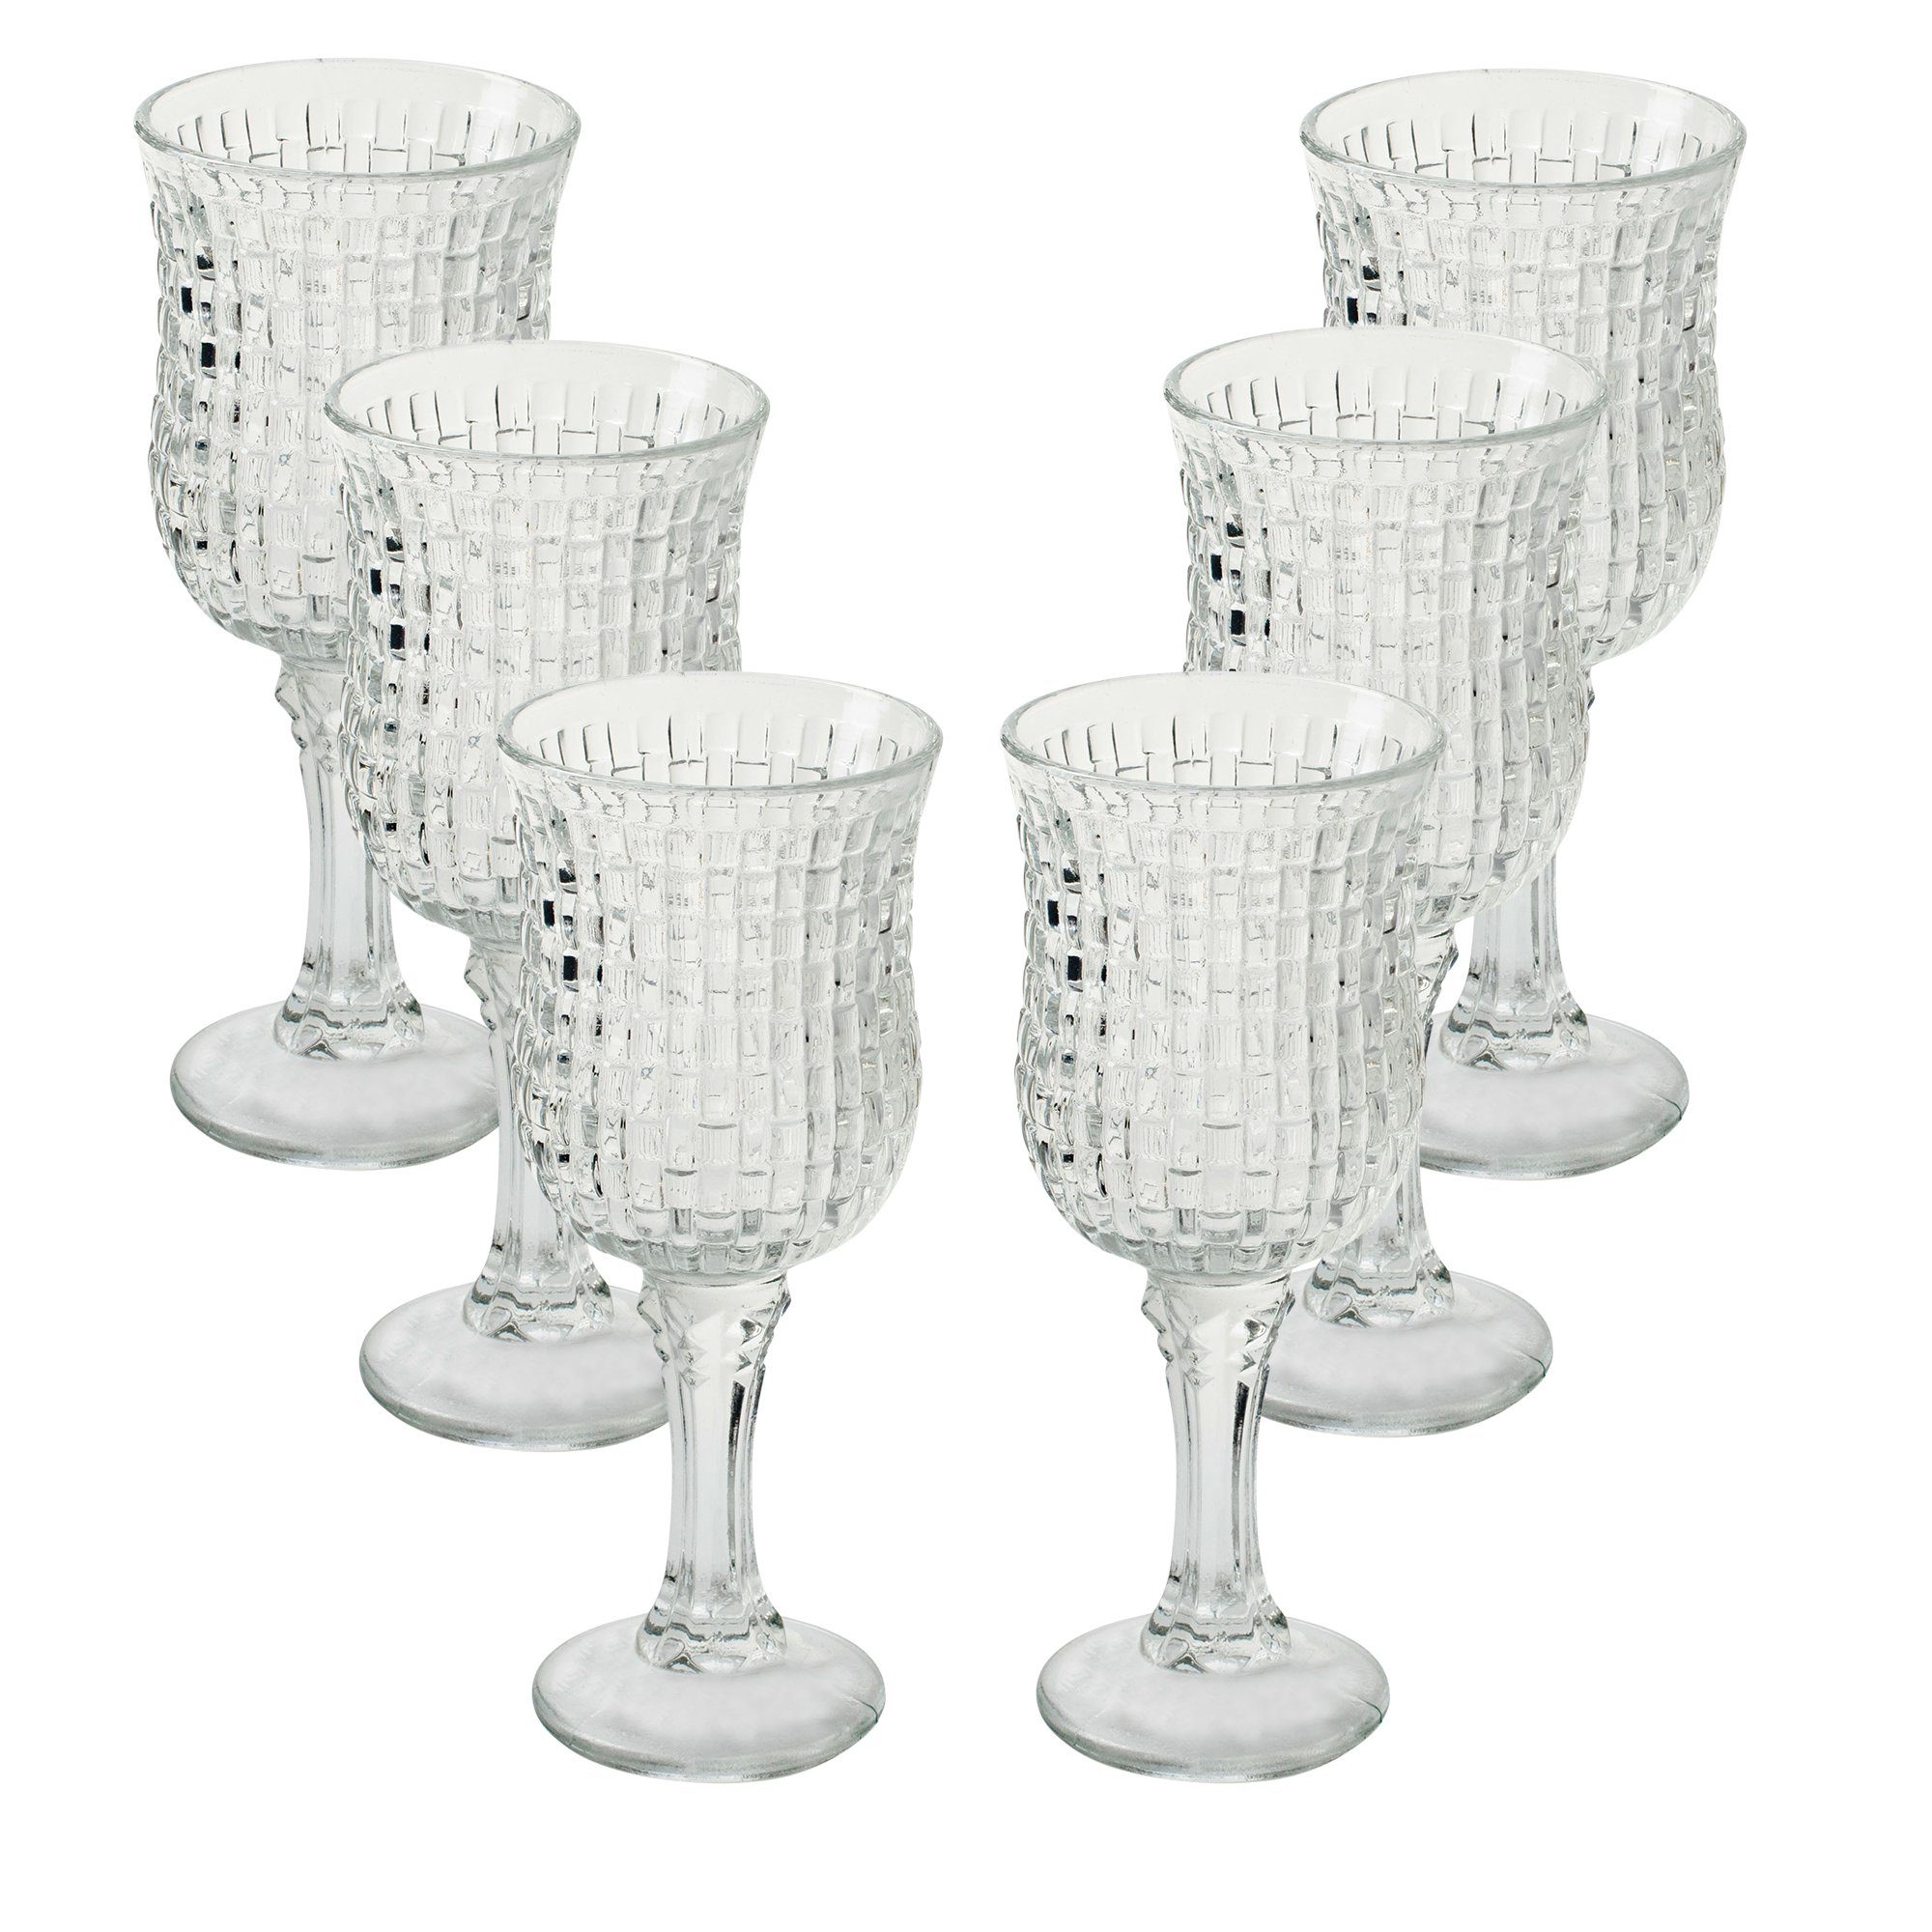 Annastore Teelichthalter Teelichtgläser Kleine Windlichter Tischdeko für Hochzeit, Vase, Blumenvase, Kerzenhalter